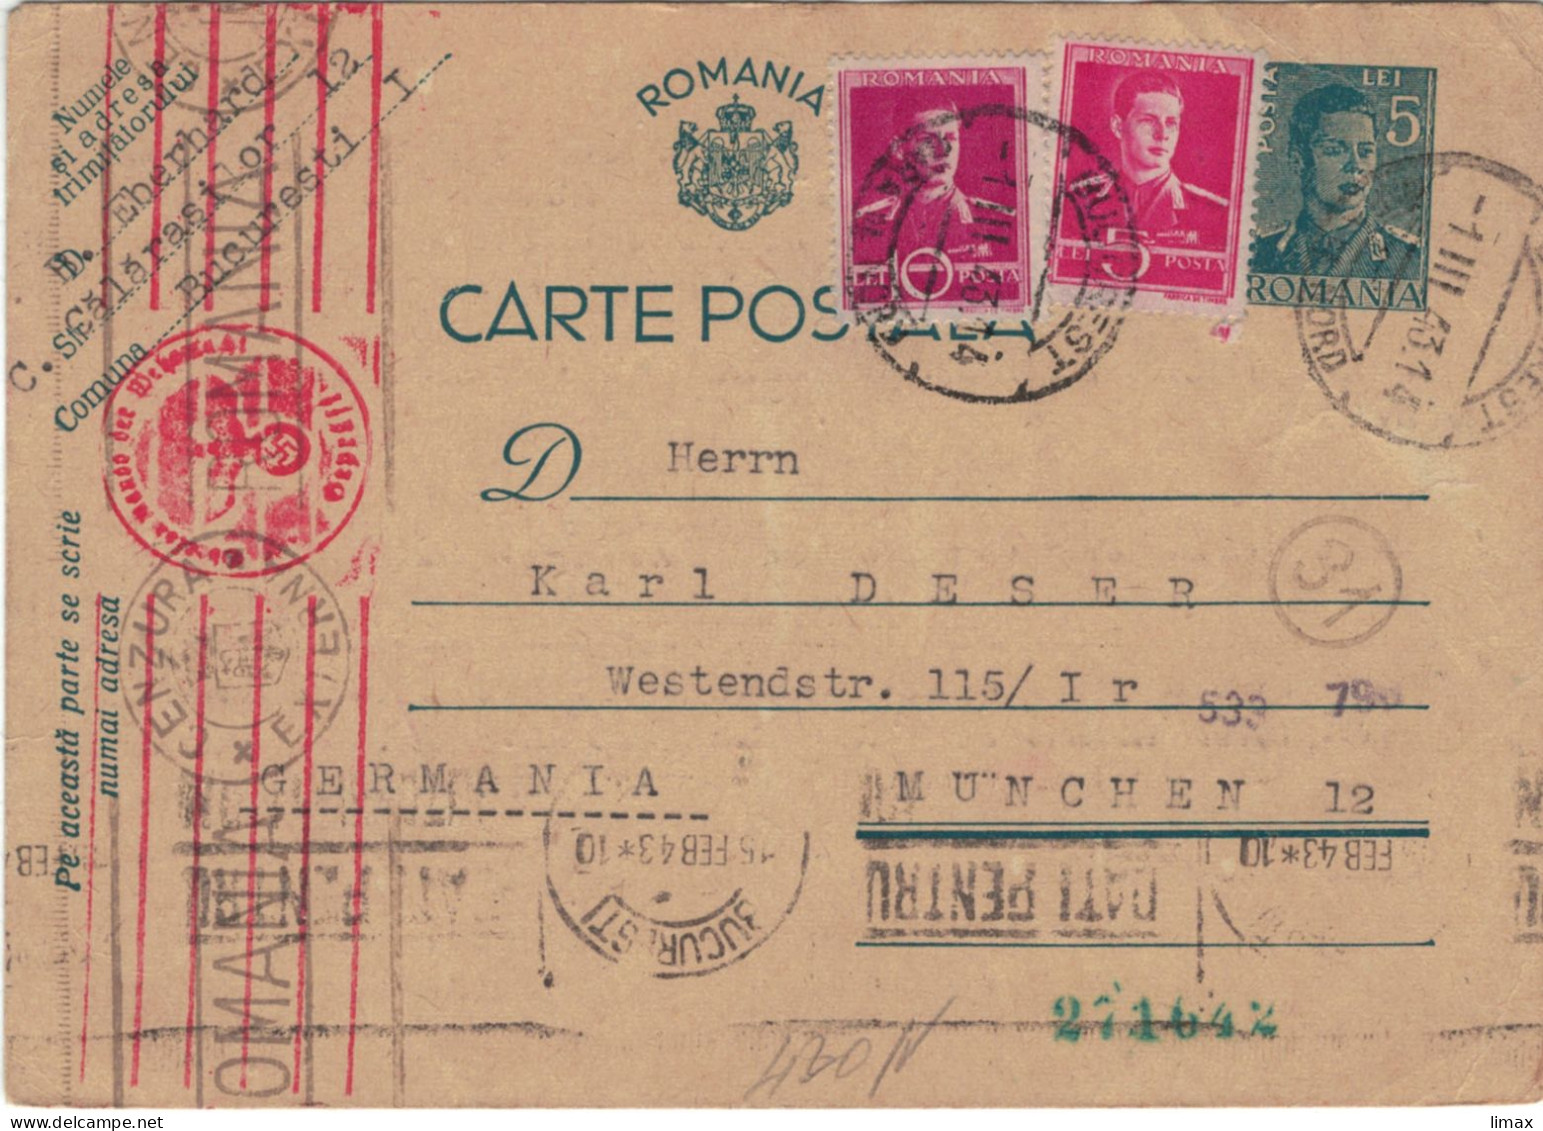 Ganzsache Bukarest 1.III.1943 > Karl Deser München - Zensur OKW Briefträgerstempel (31) - Lettres & Documents